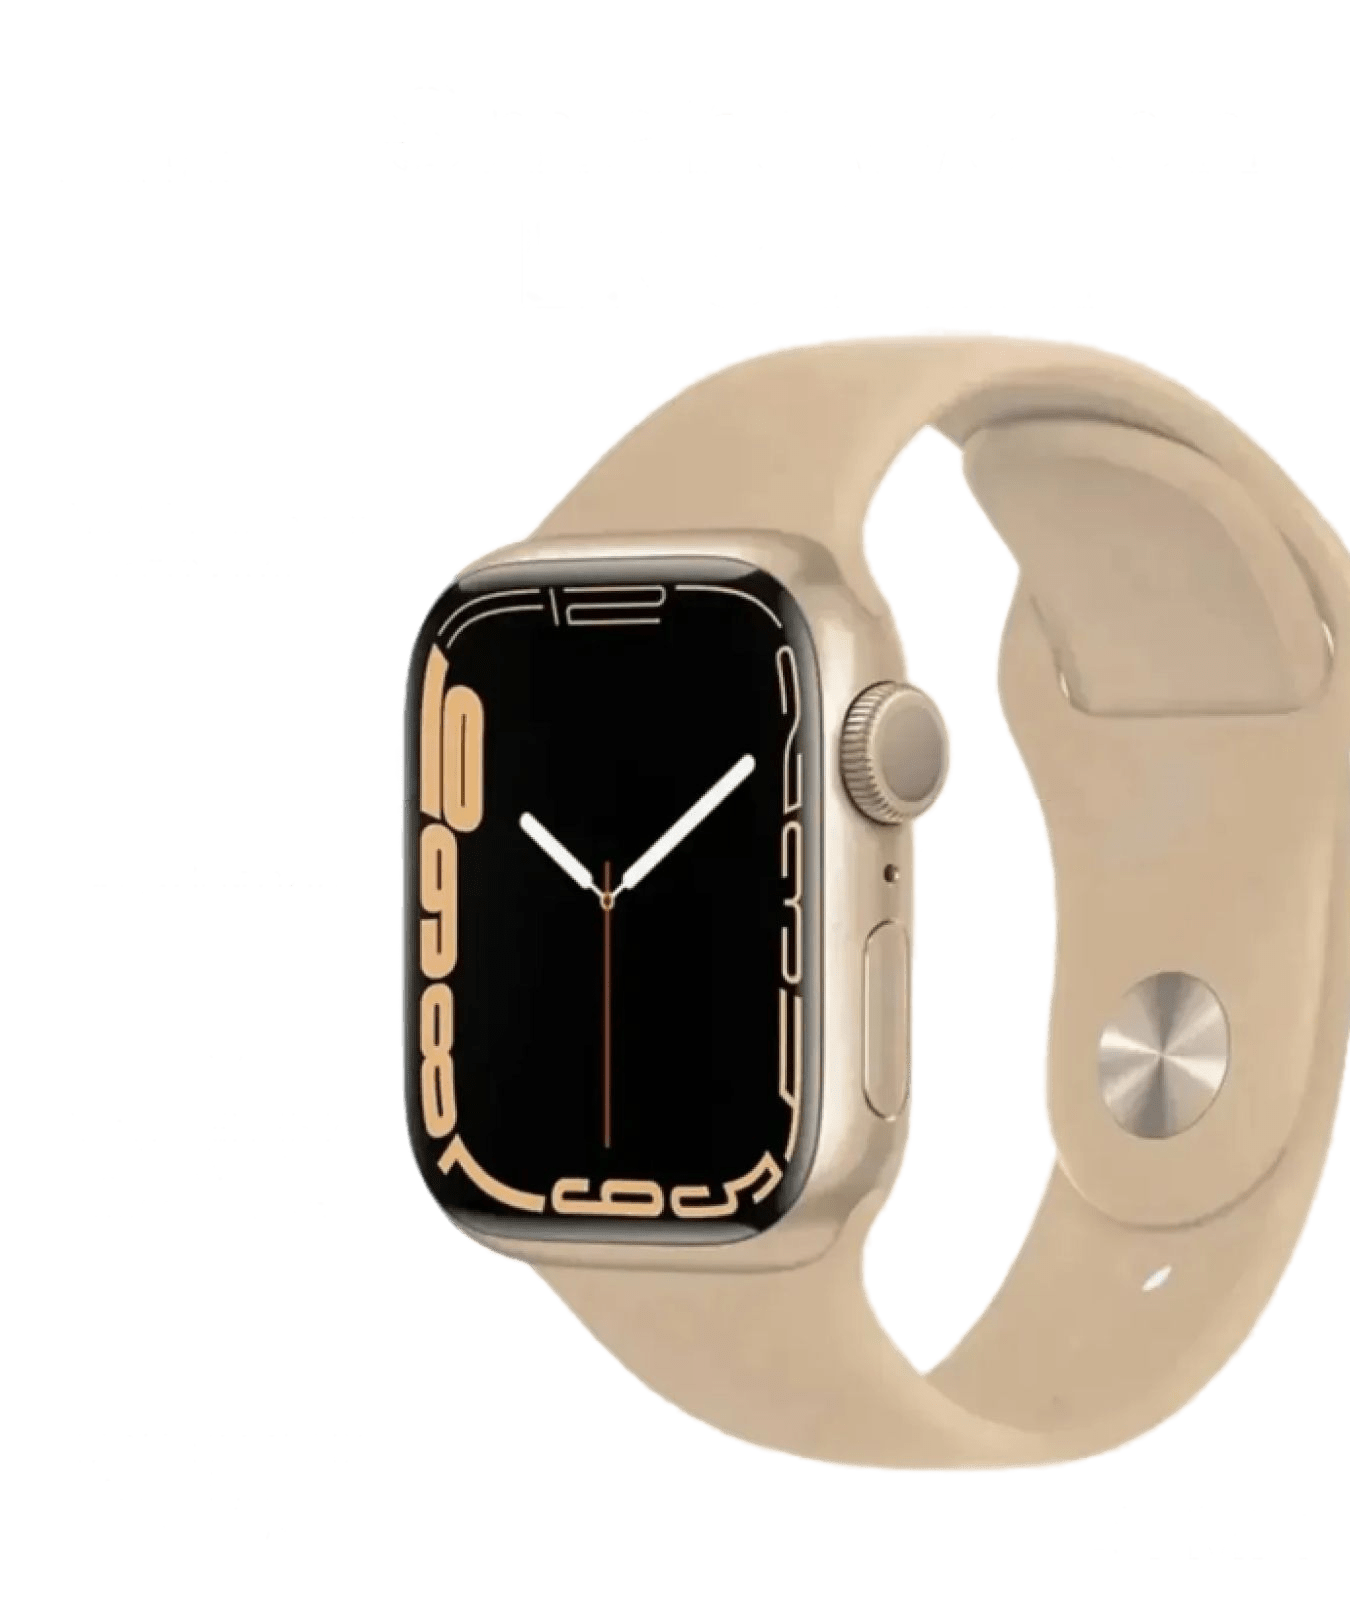 Эппл вотч. Apple watch se 44mm. Часы Apple IWATCH se 44mm. Часы Эппл вотч 6. Эпл вотч se 40 мм.